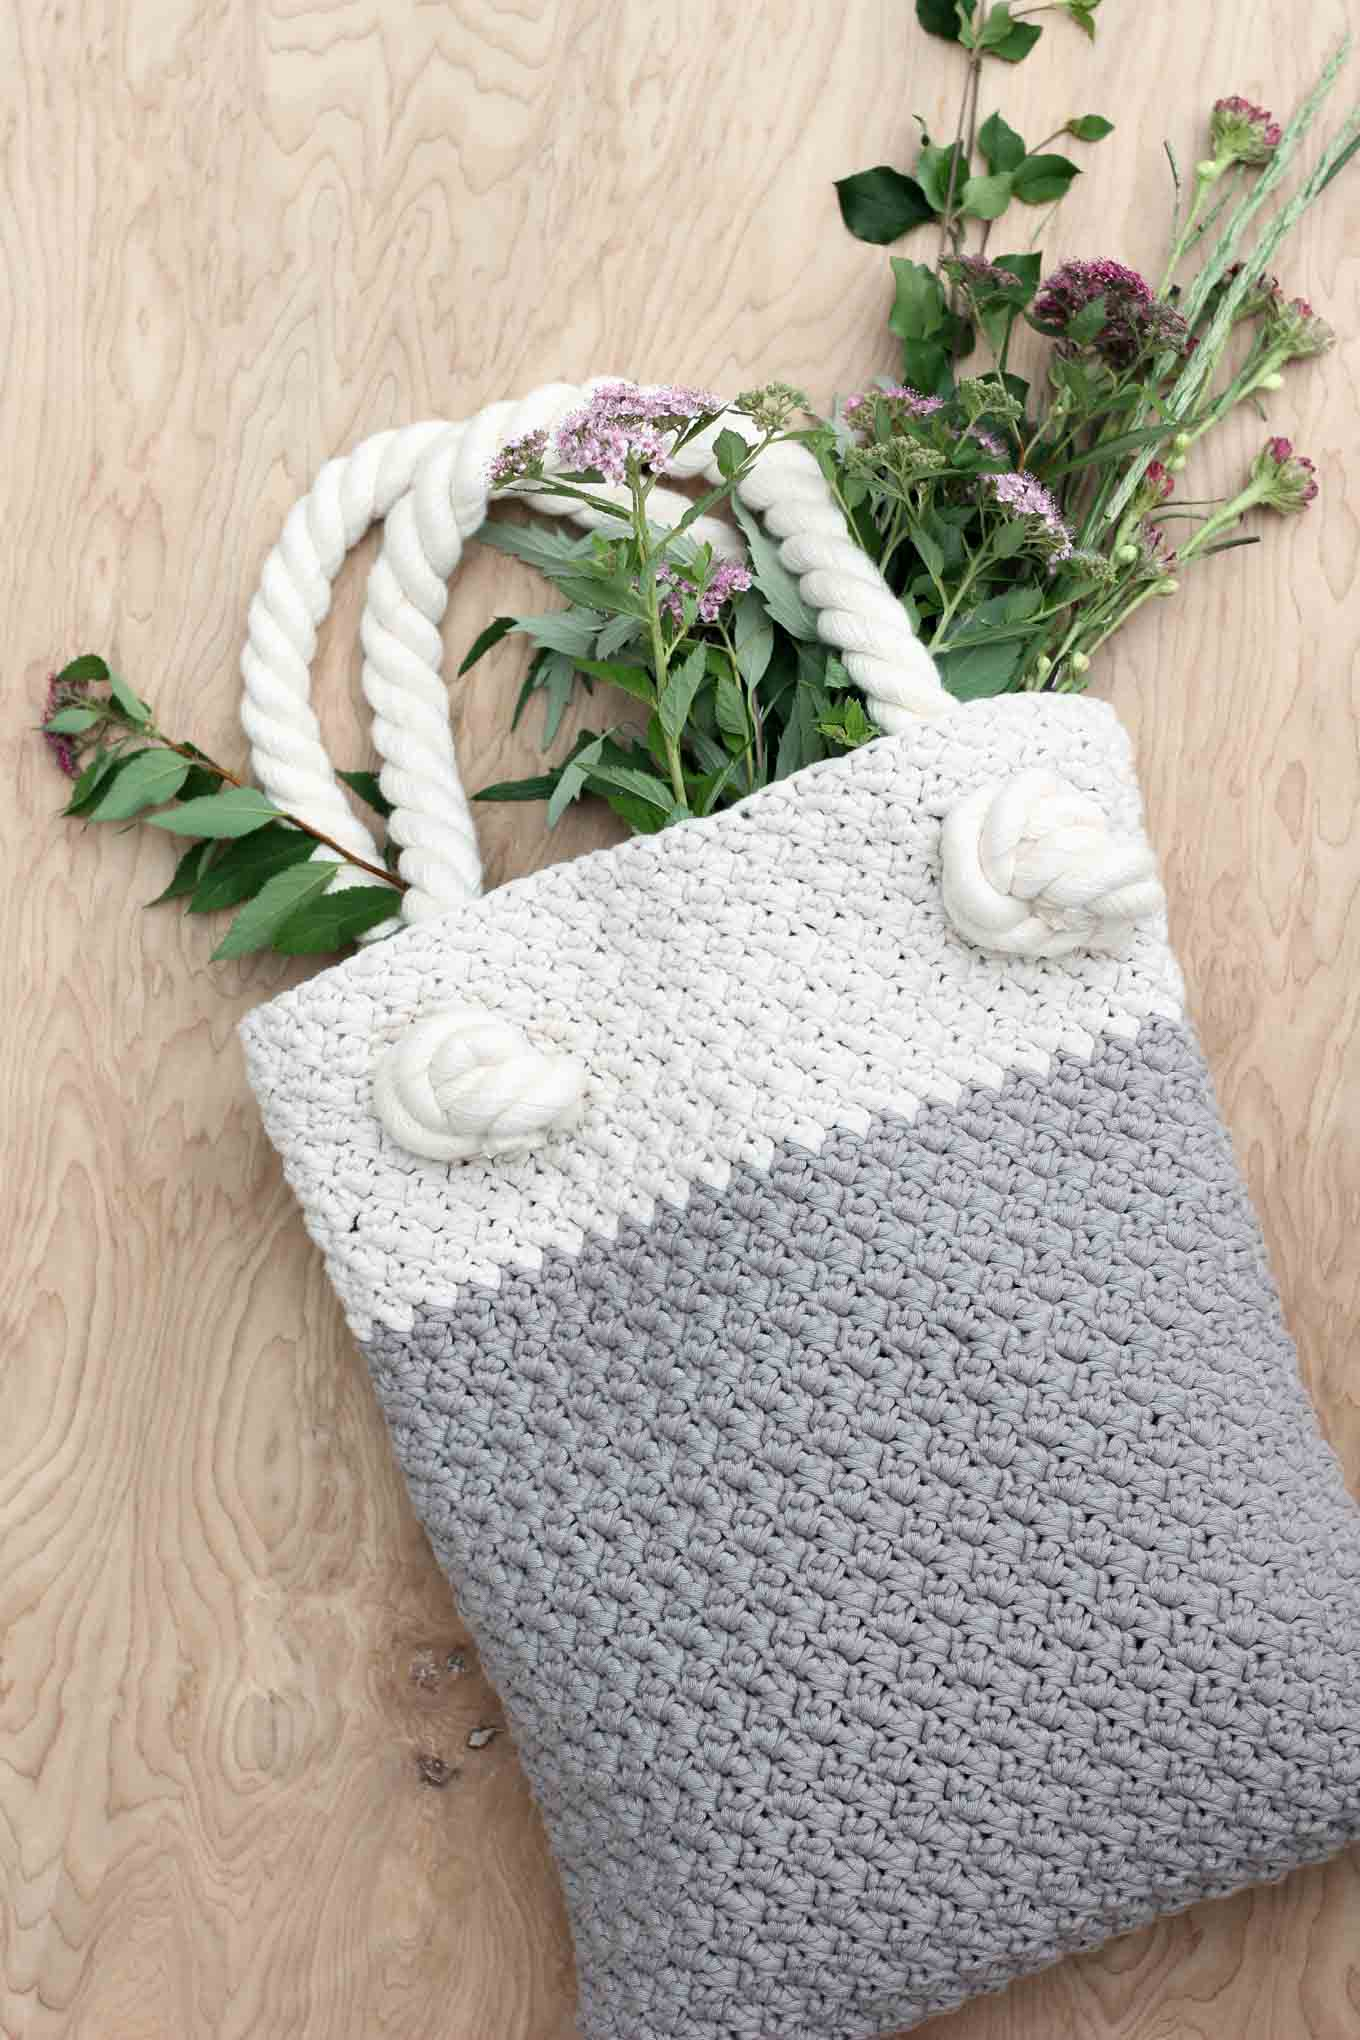 Beginner Crochet Patterns Free Easy Modern Free Crochet Bag Pattern For Beginners